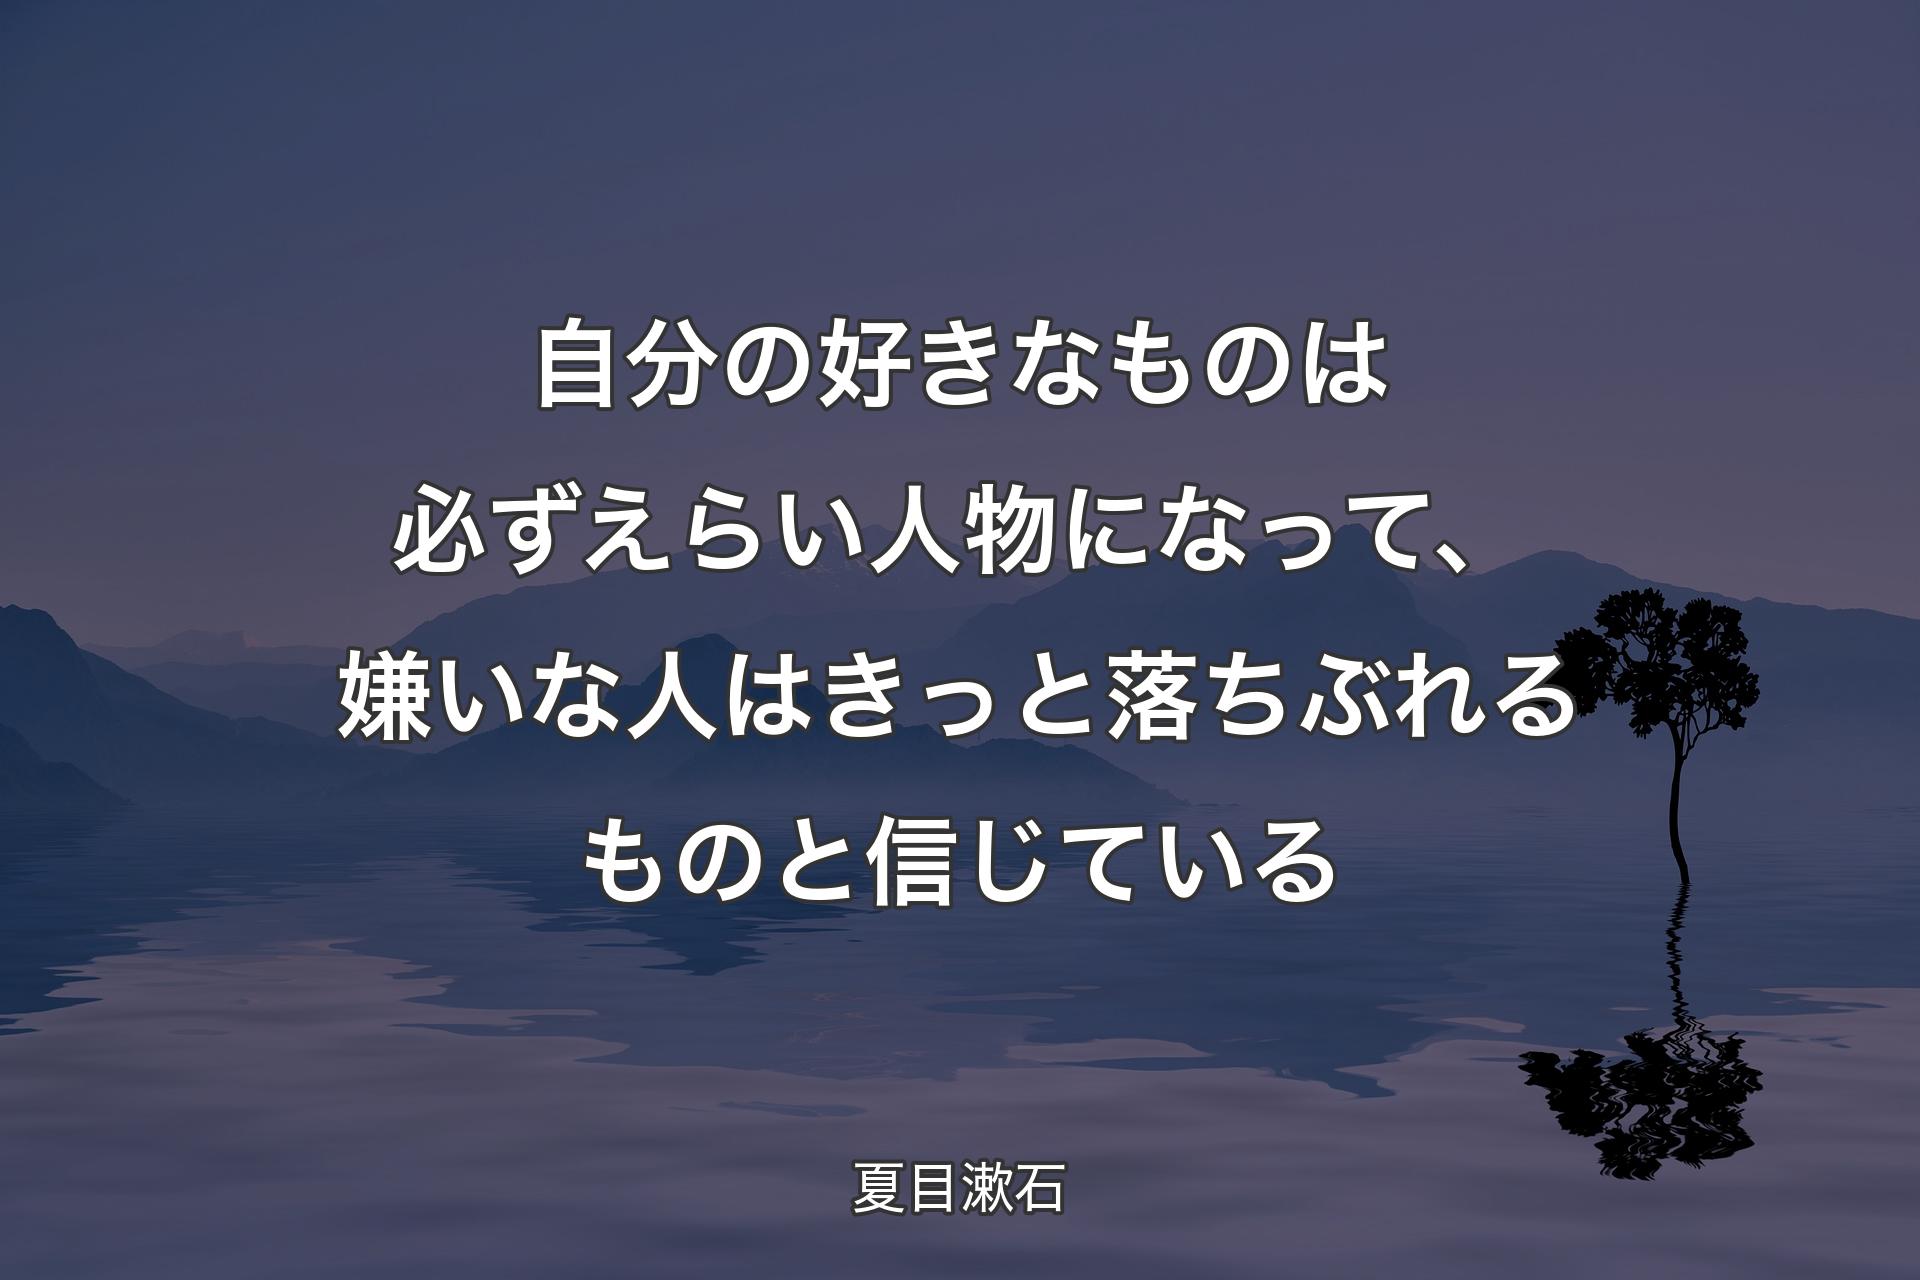 【背景4】自分の好きなものは必ずえらい人物になって、嫌いな人はきっと落ちぶれるものと信じている - 夏目漱石